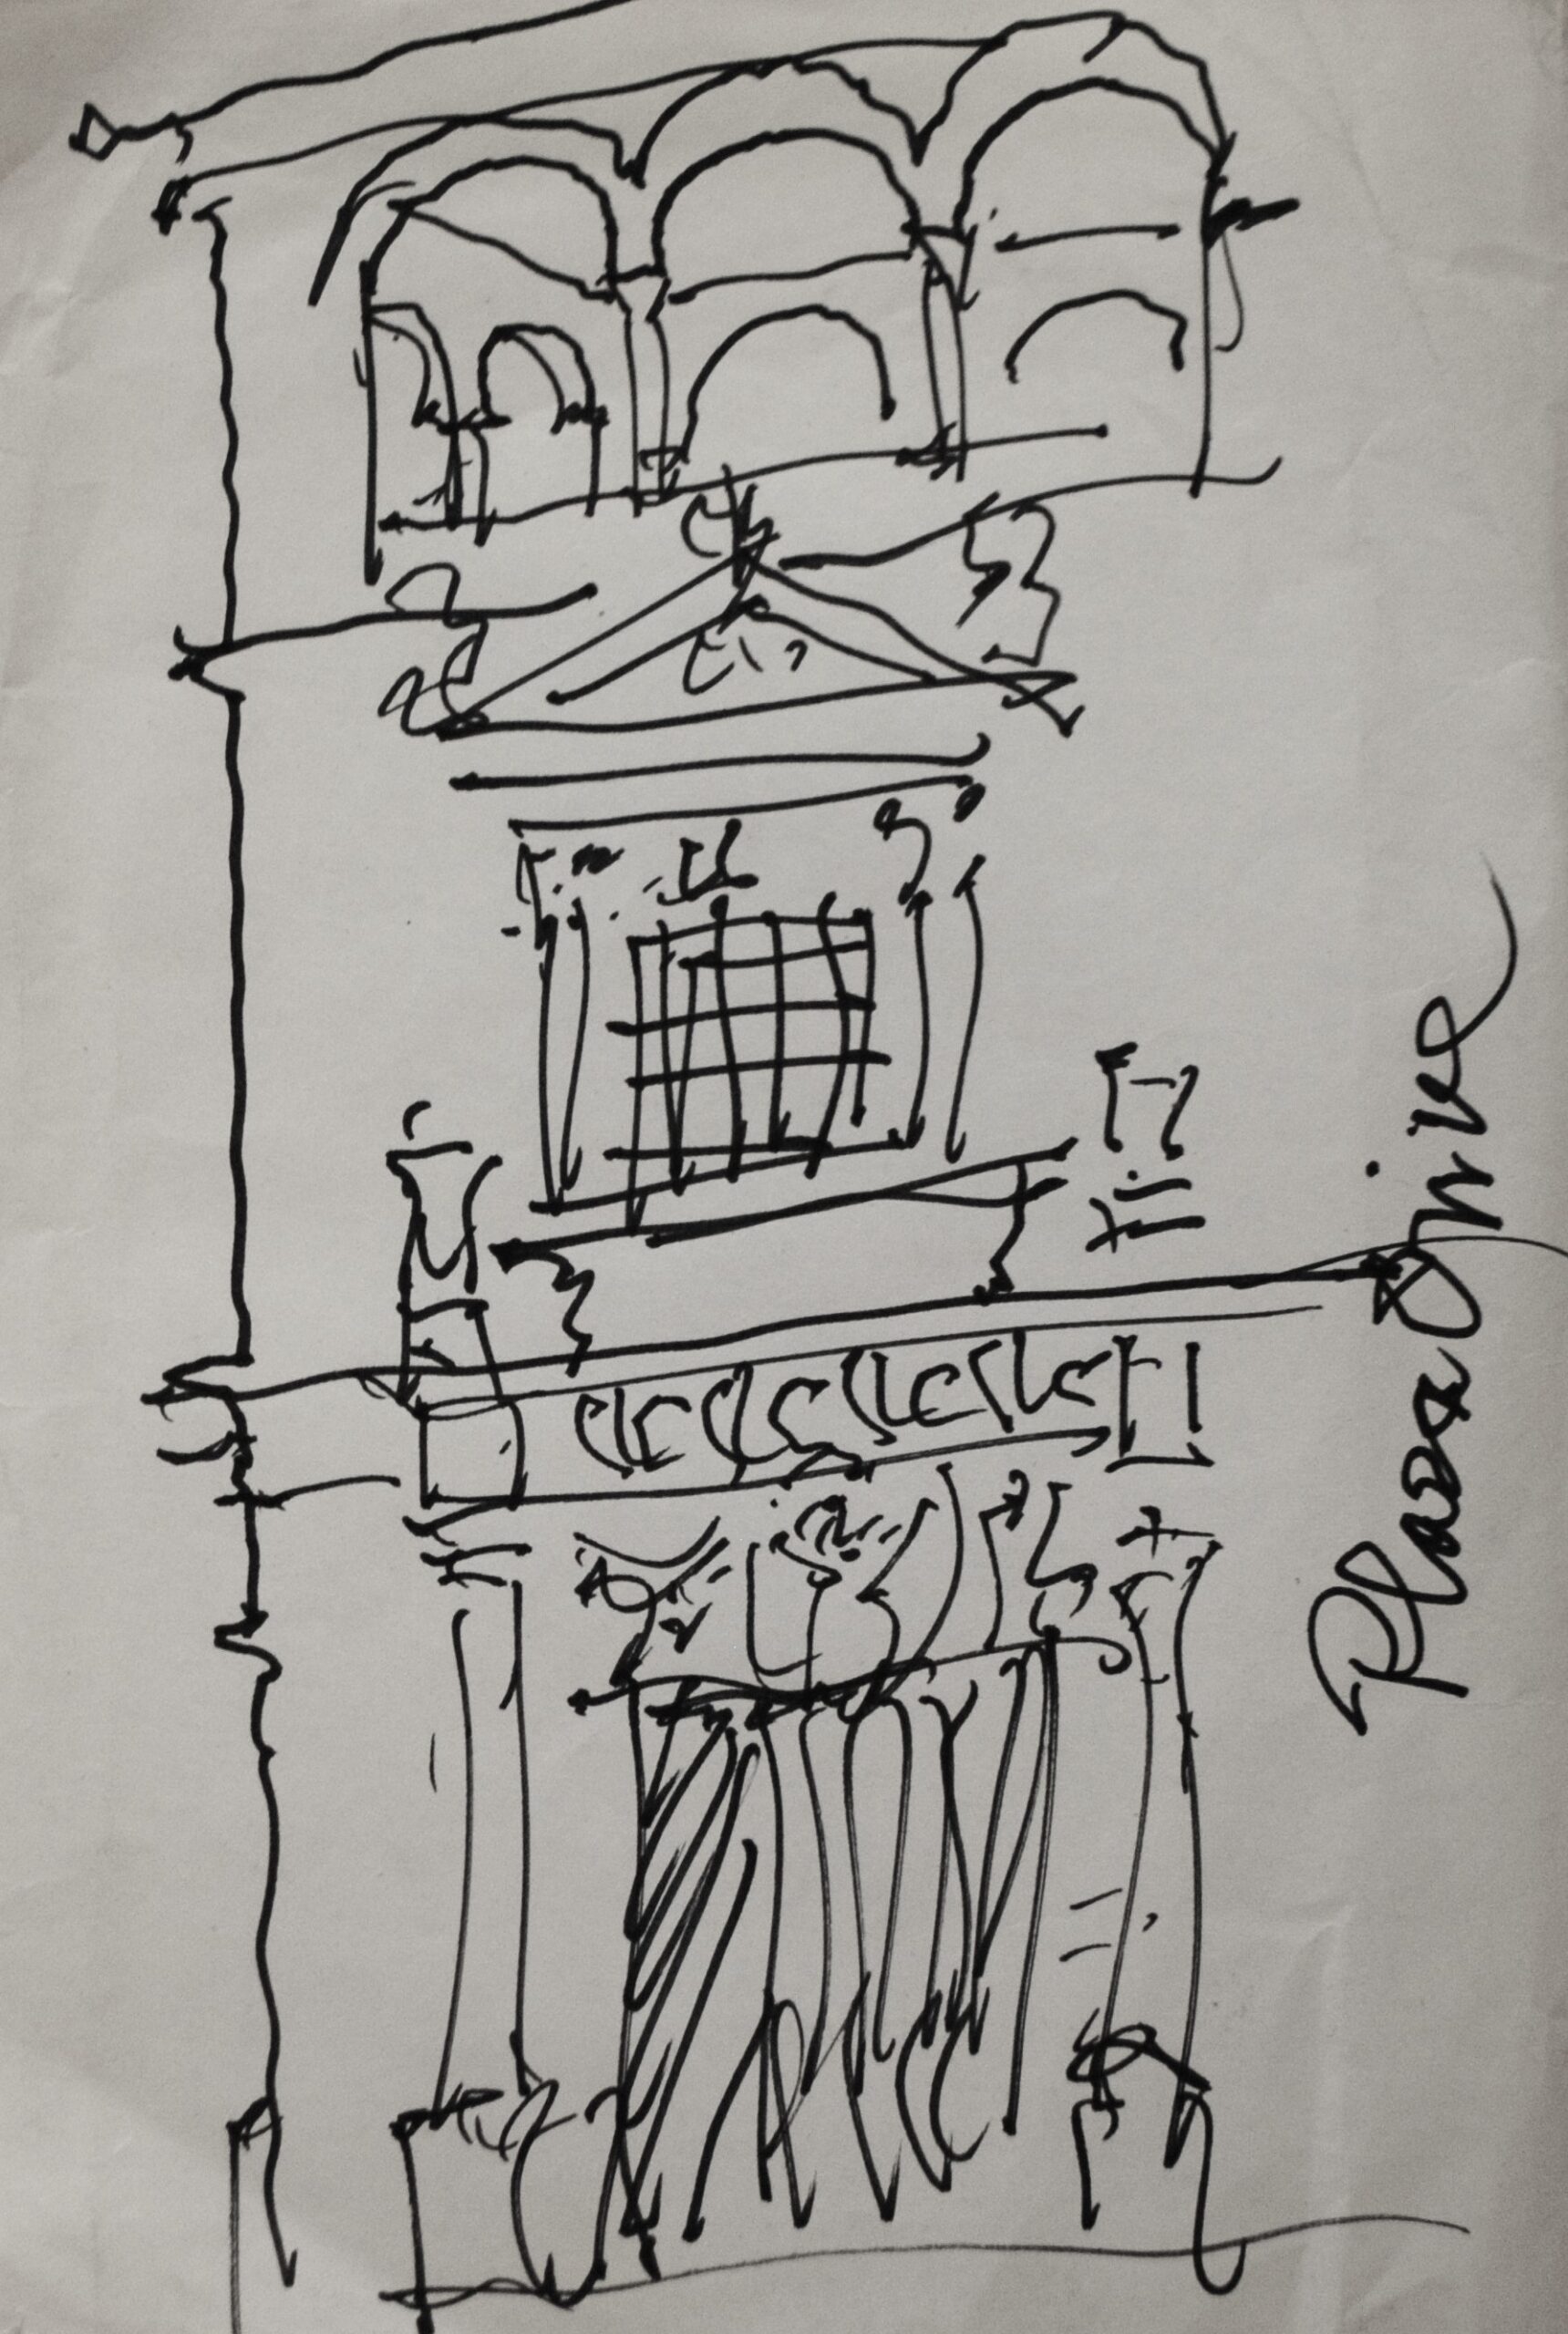 Dibujo de José Manaut titulado Plaza Onive. Tinta sobre papel.